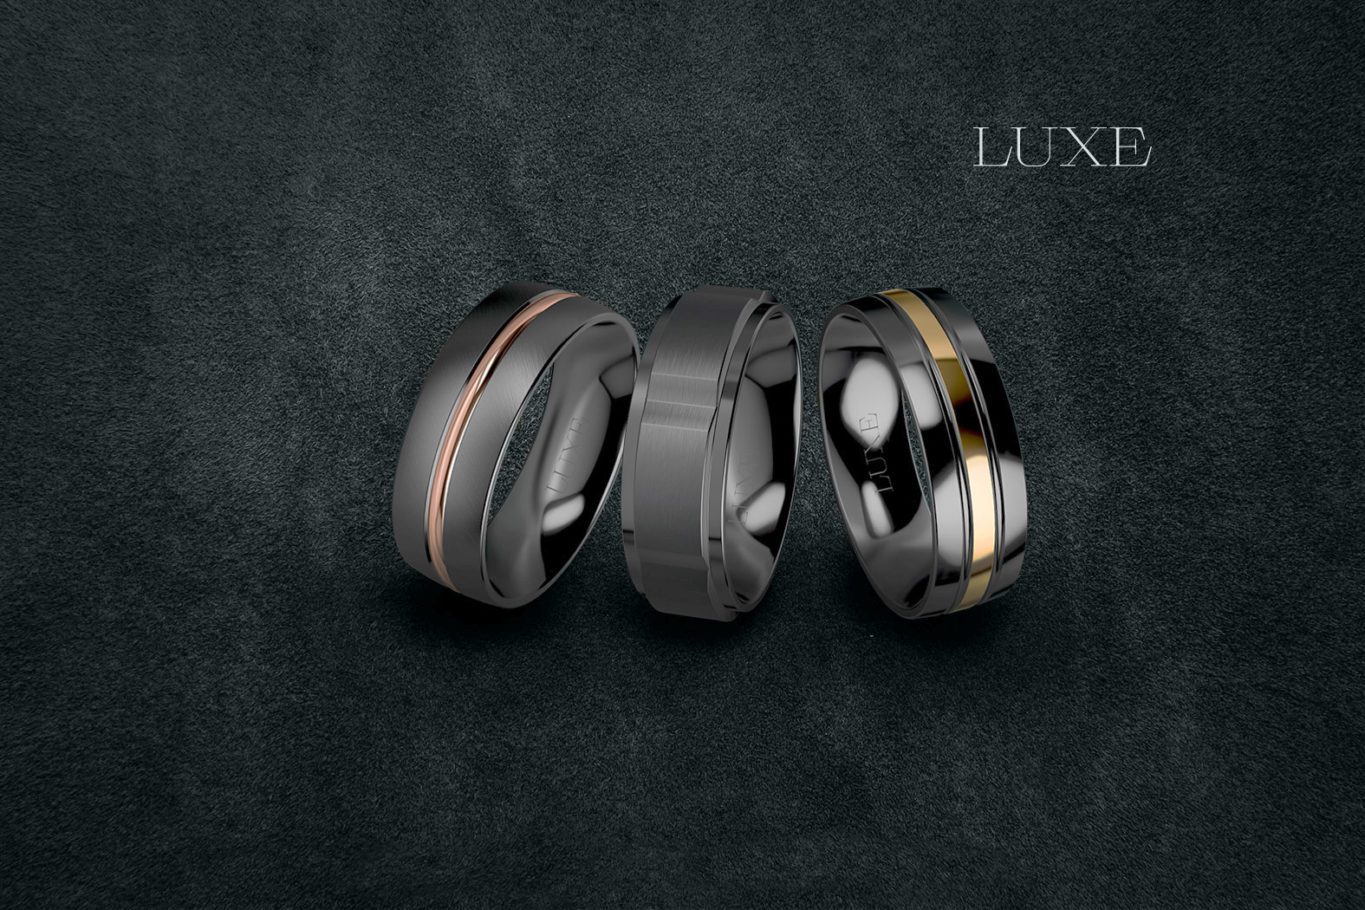 luze zirconium - Luxe Wedding Rings